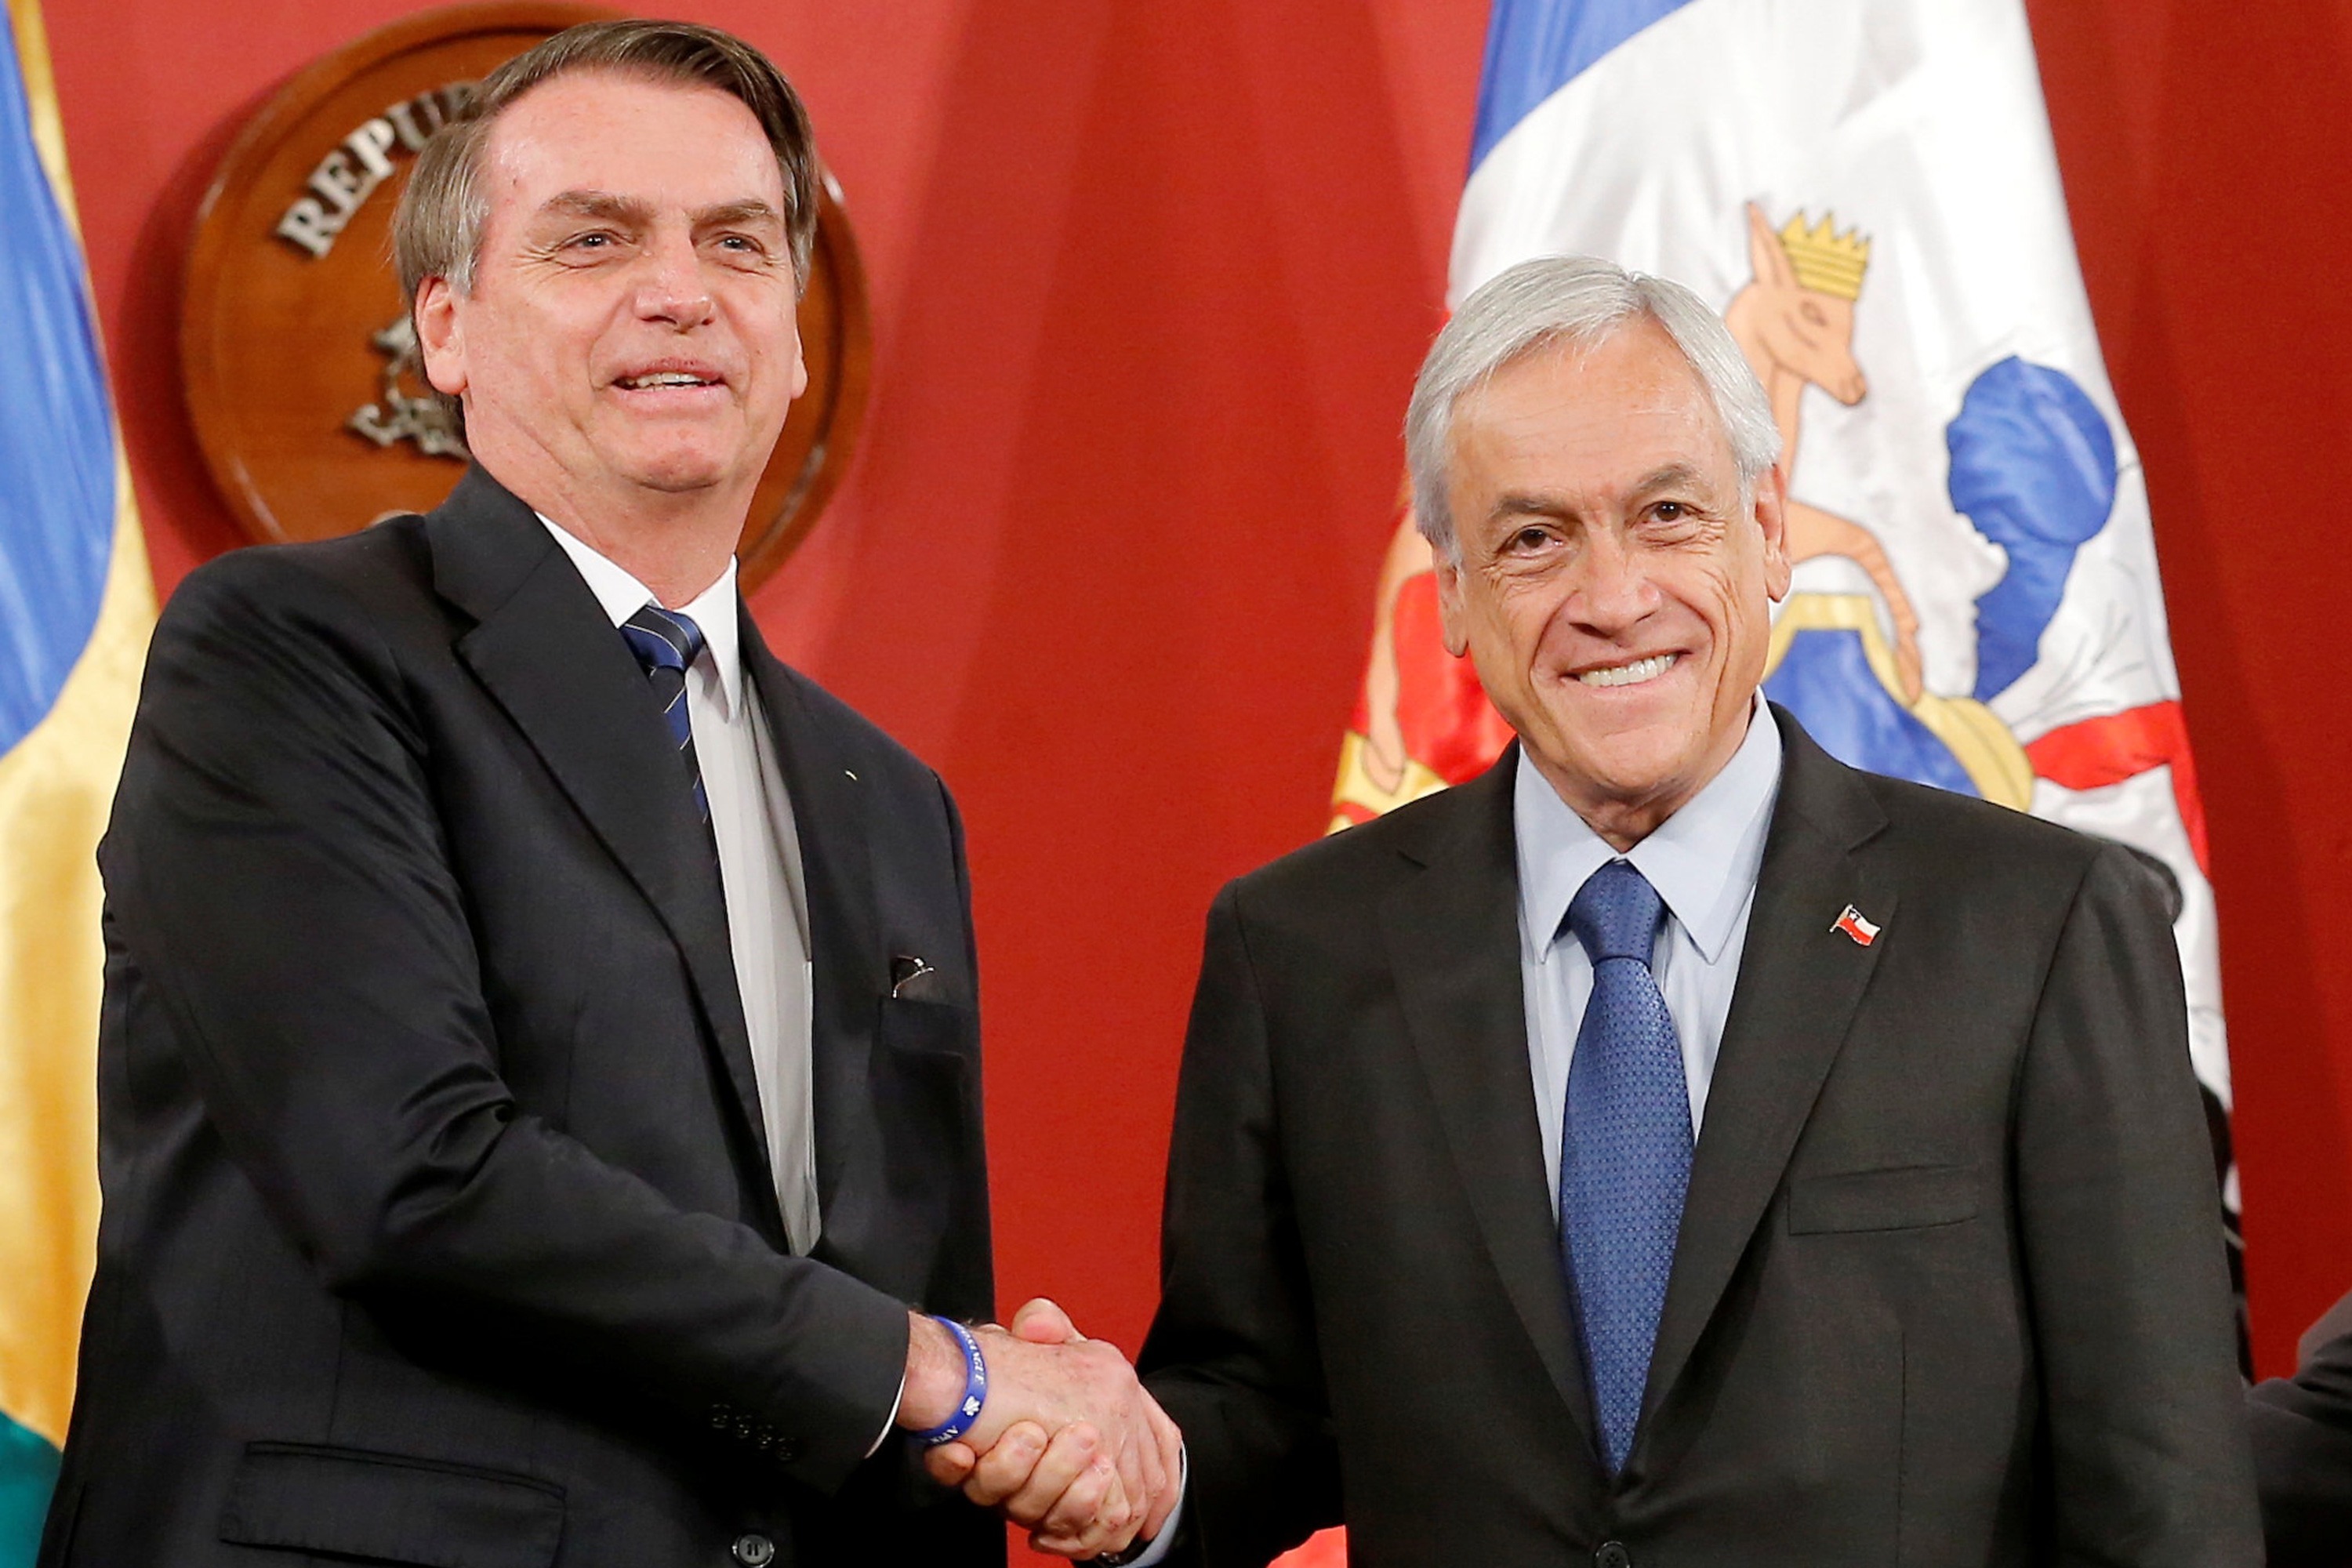 O presidente da República, Jair Bolsonaro, cumprimenta o presidente chileno Sebastián Piñera, durante assinatura de acordos em Santiago- 23/03/2019 (Rodrigo Garrido/Reuters)